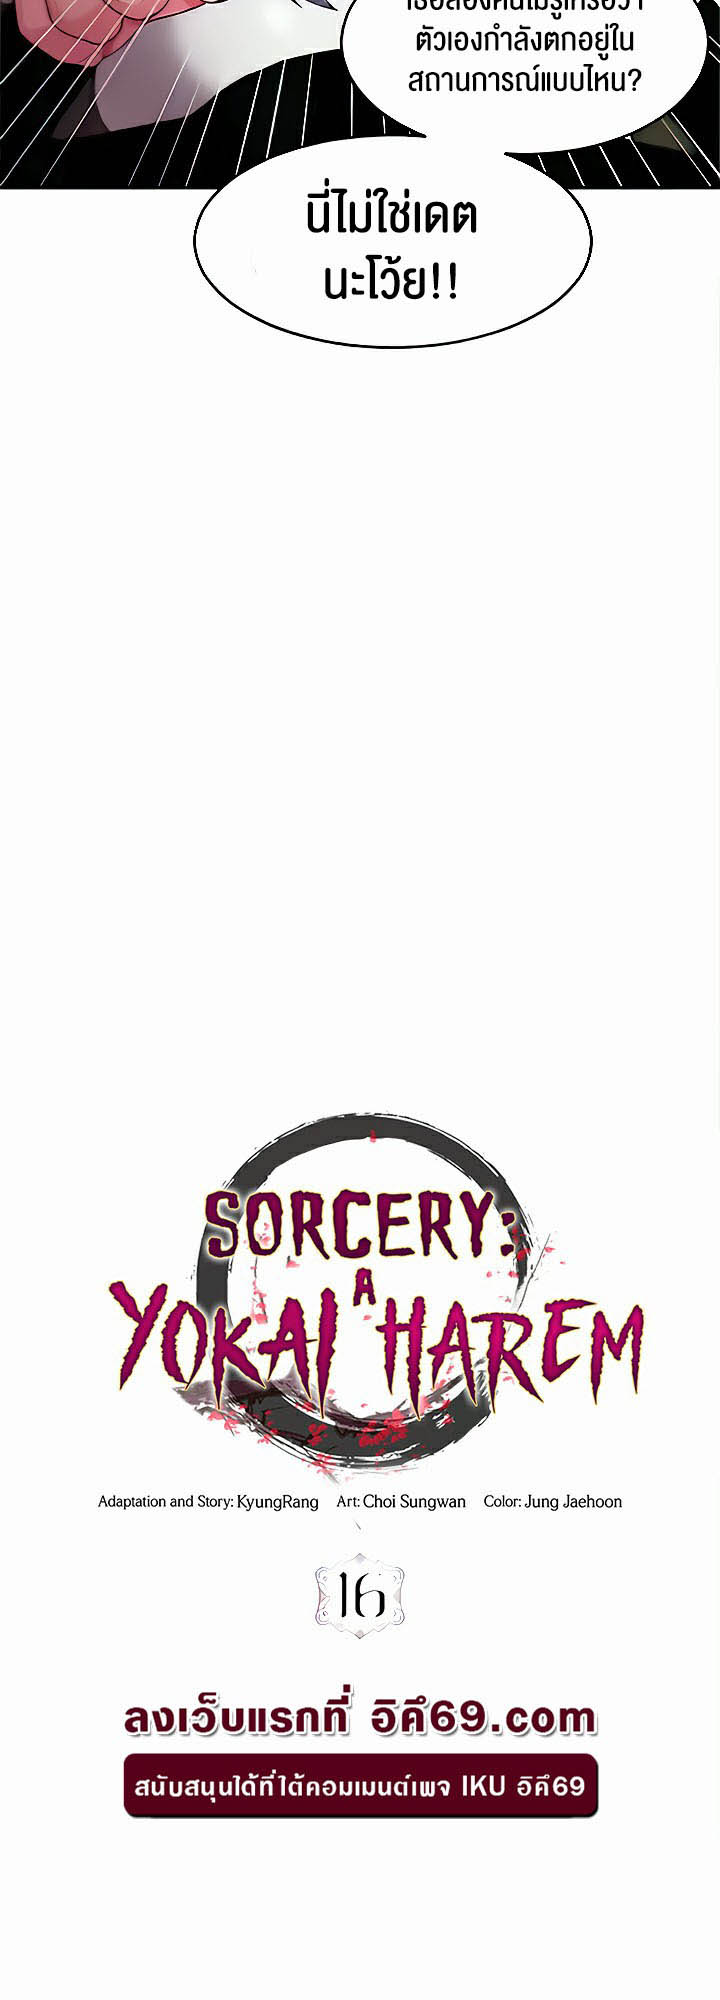 อ่านโดจิน เรื่อง Sorcery A Yokai Harem 16 30